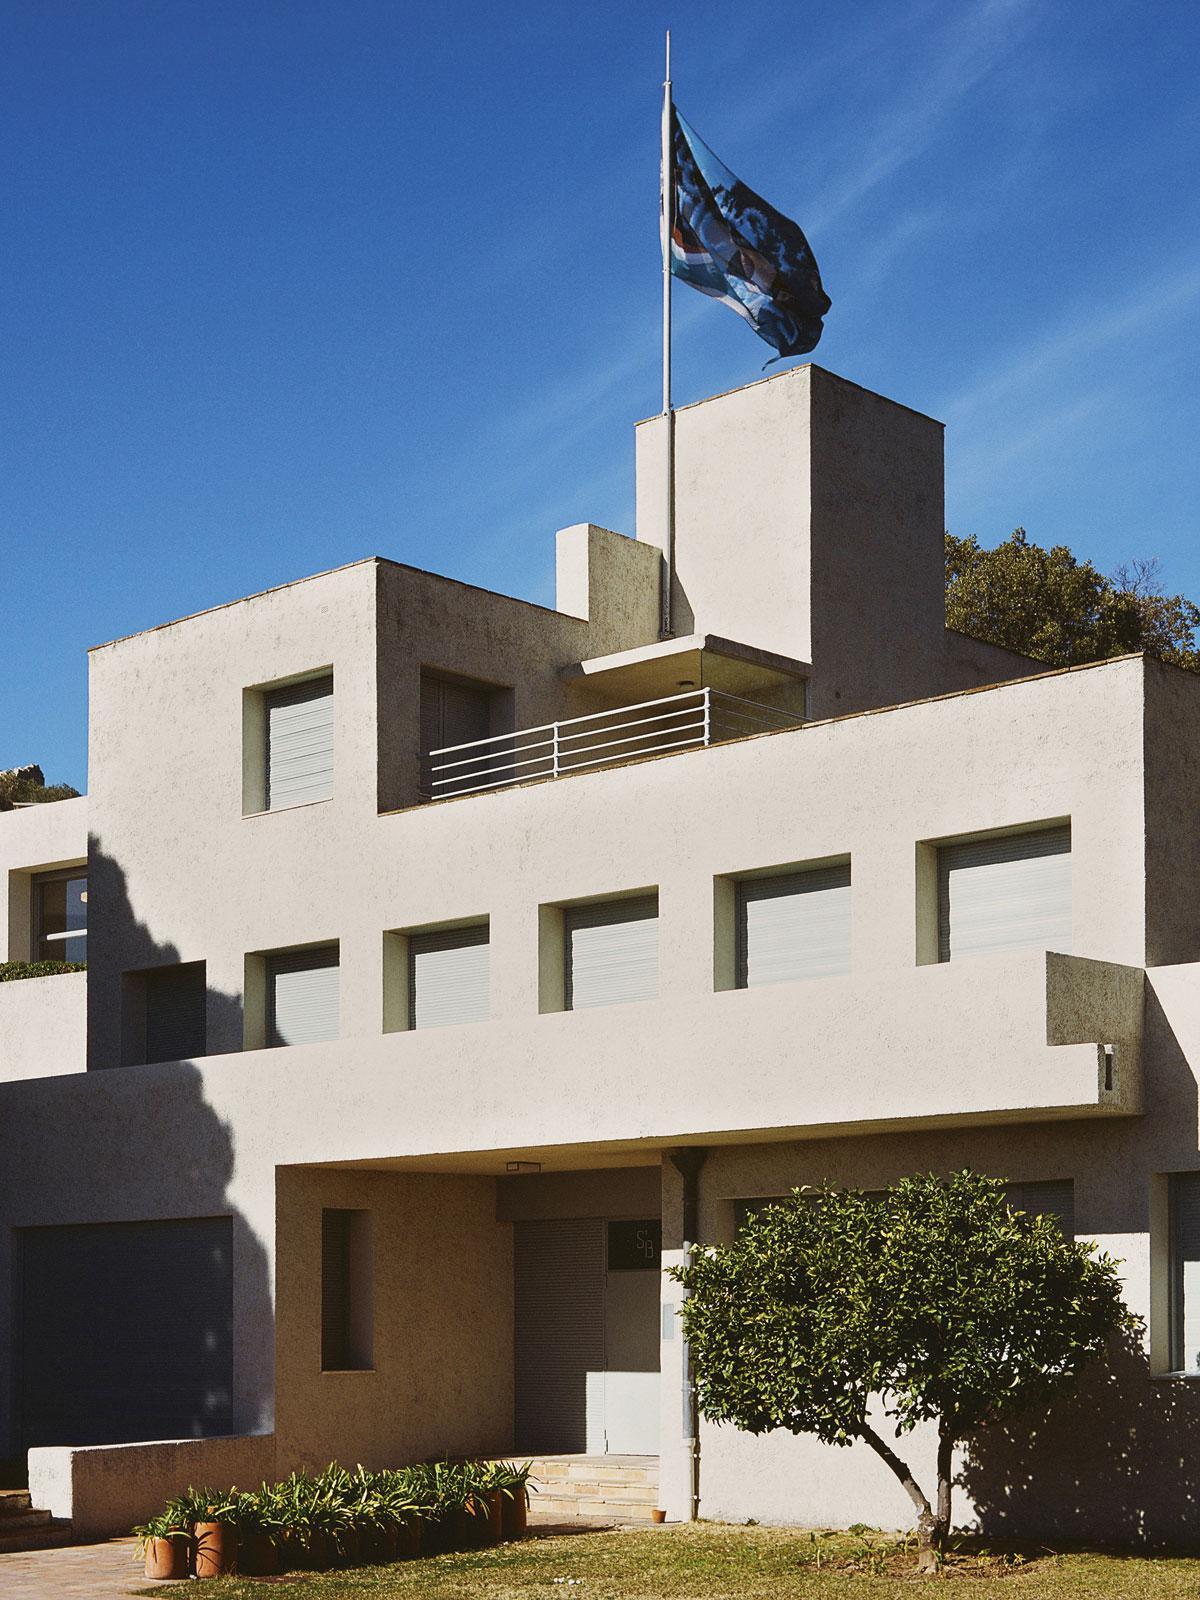 Villa Noailles, het eerste gebouw van Robert Mallet-Stevens, heeft kubusvormige volumes, typisch voor het modernisme.